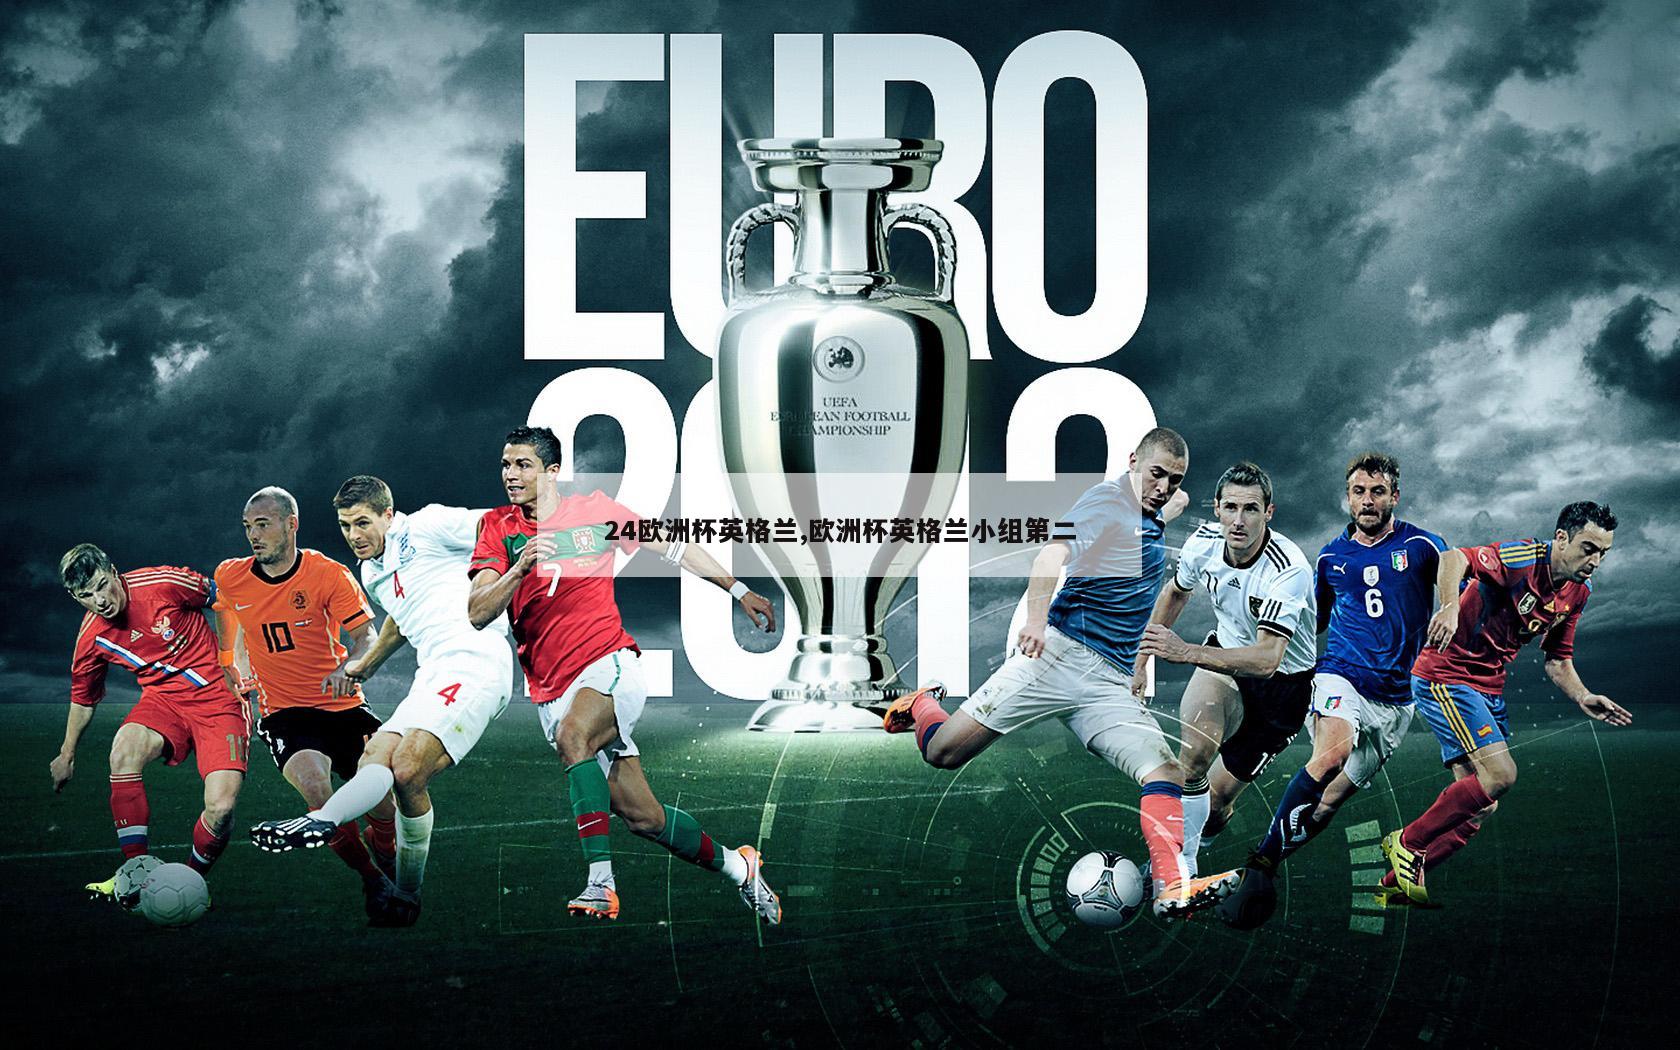 24欧洲杯英格兰,欧洲杯英格兰小组第二